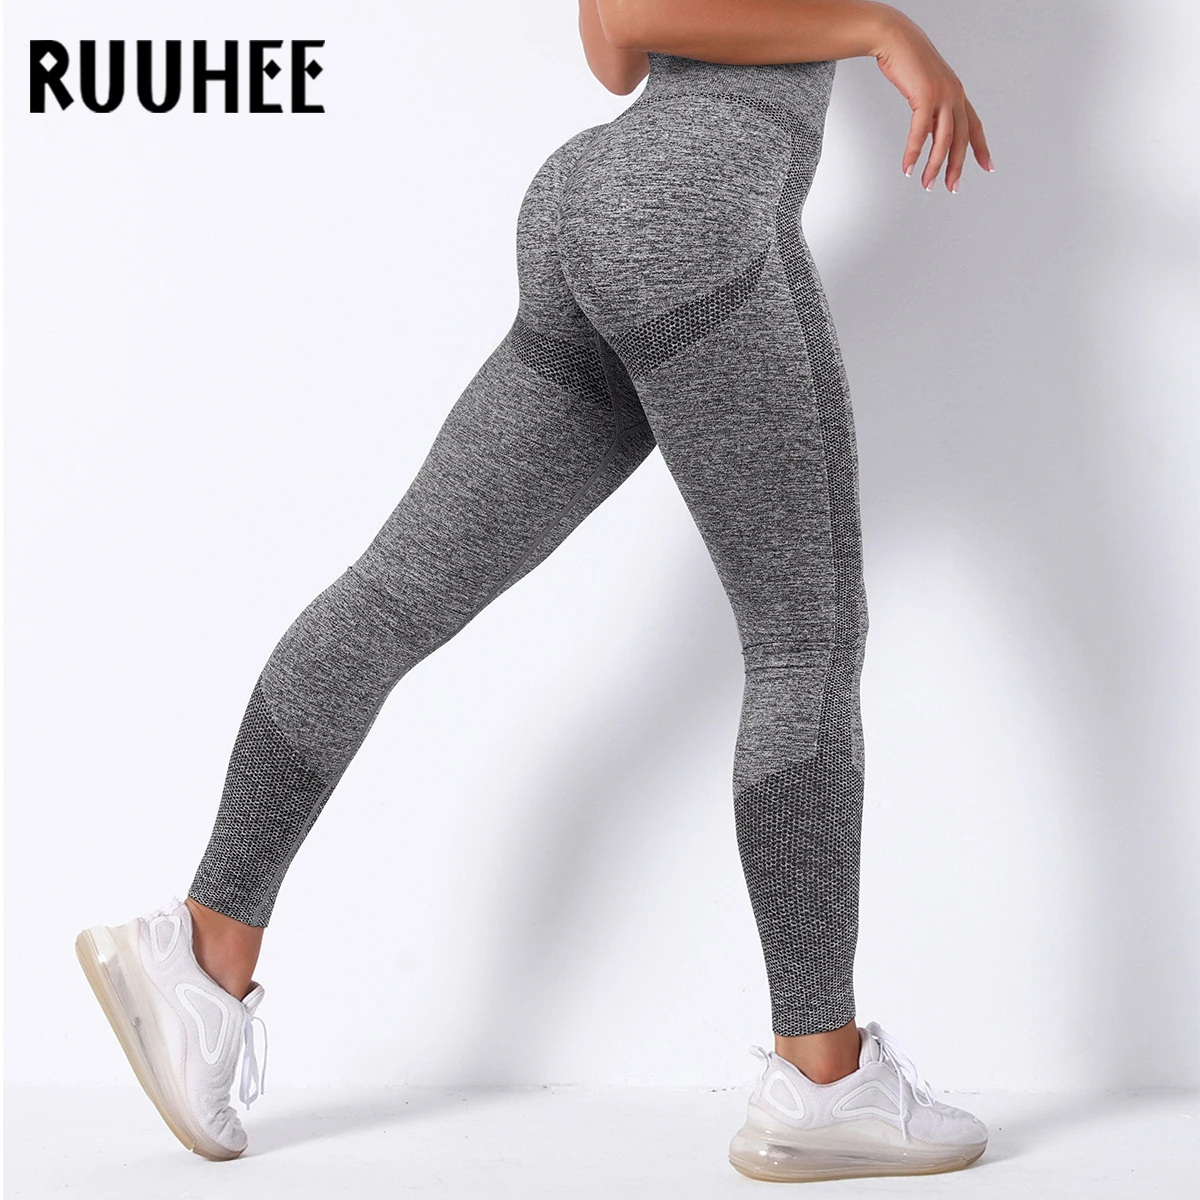 Ruuhee cintura alta sem costura, leggings push-up sport mulheres de fitness  executando calças de yoga treino calças de ginástica calças apertadas  mulheres comprar - Yoga /